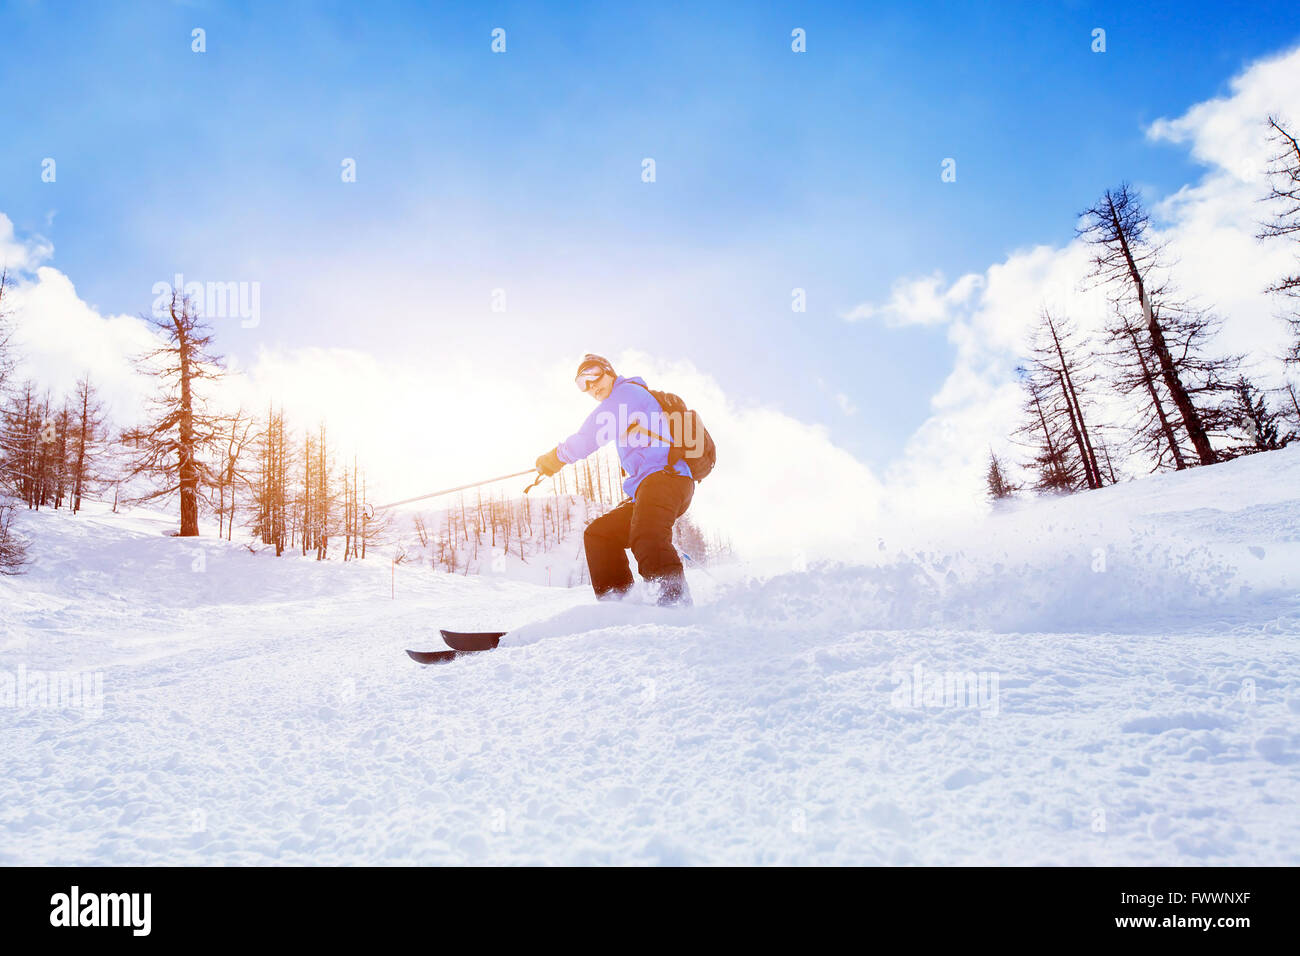 En hiver ski alpin montagne Banque D'Images